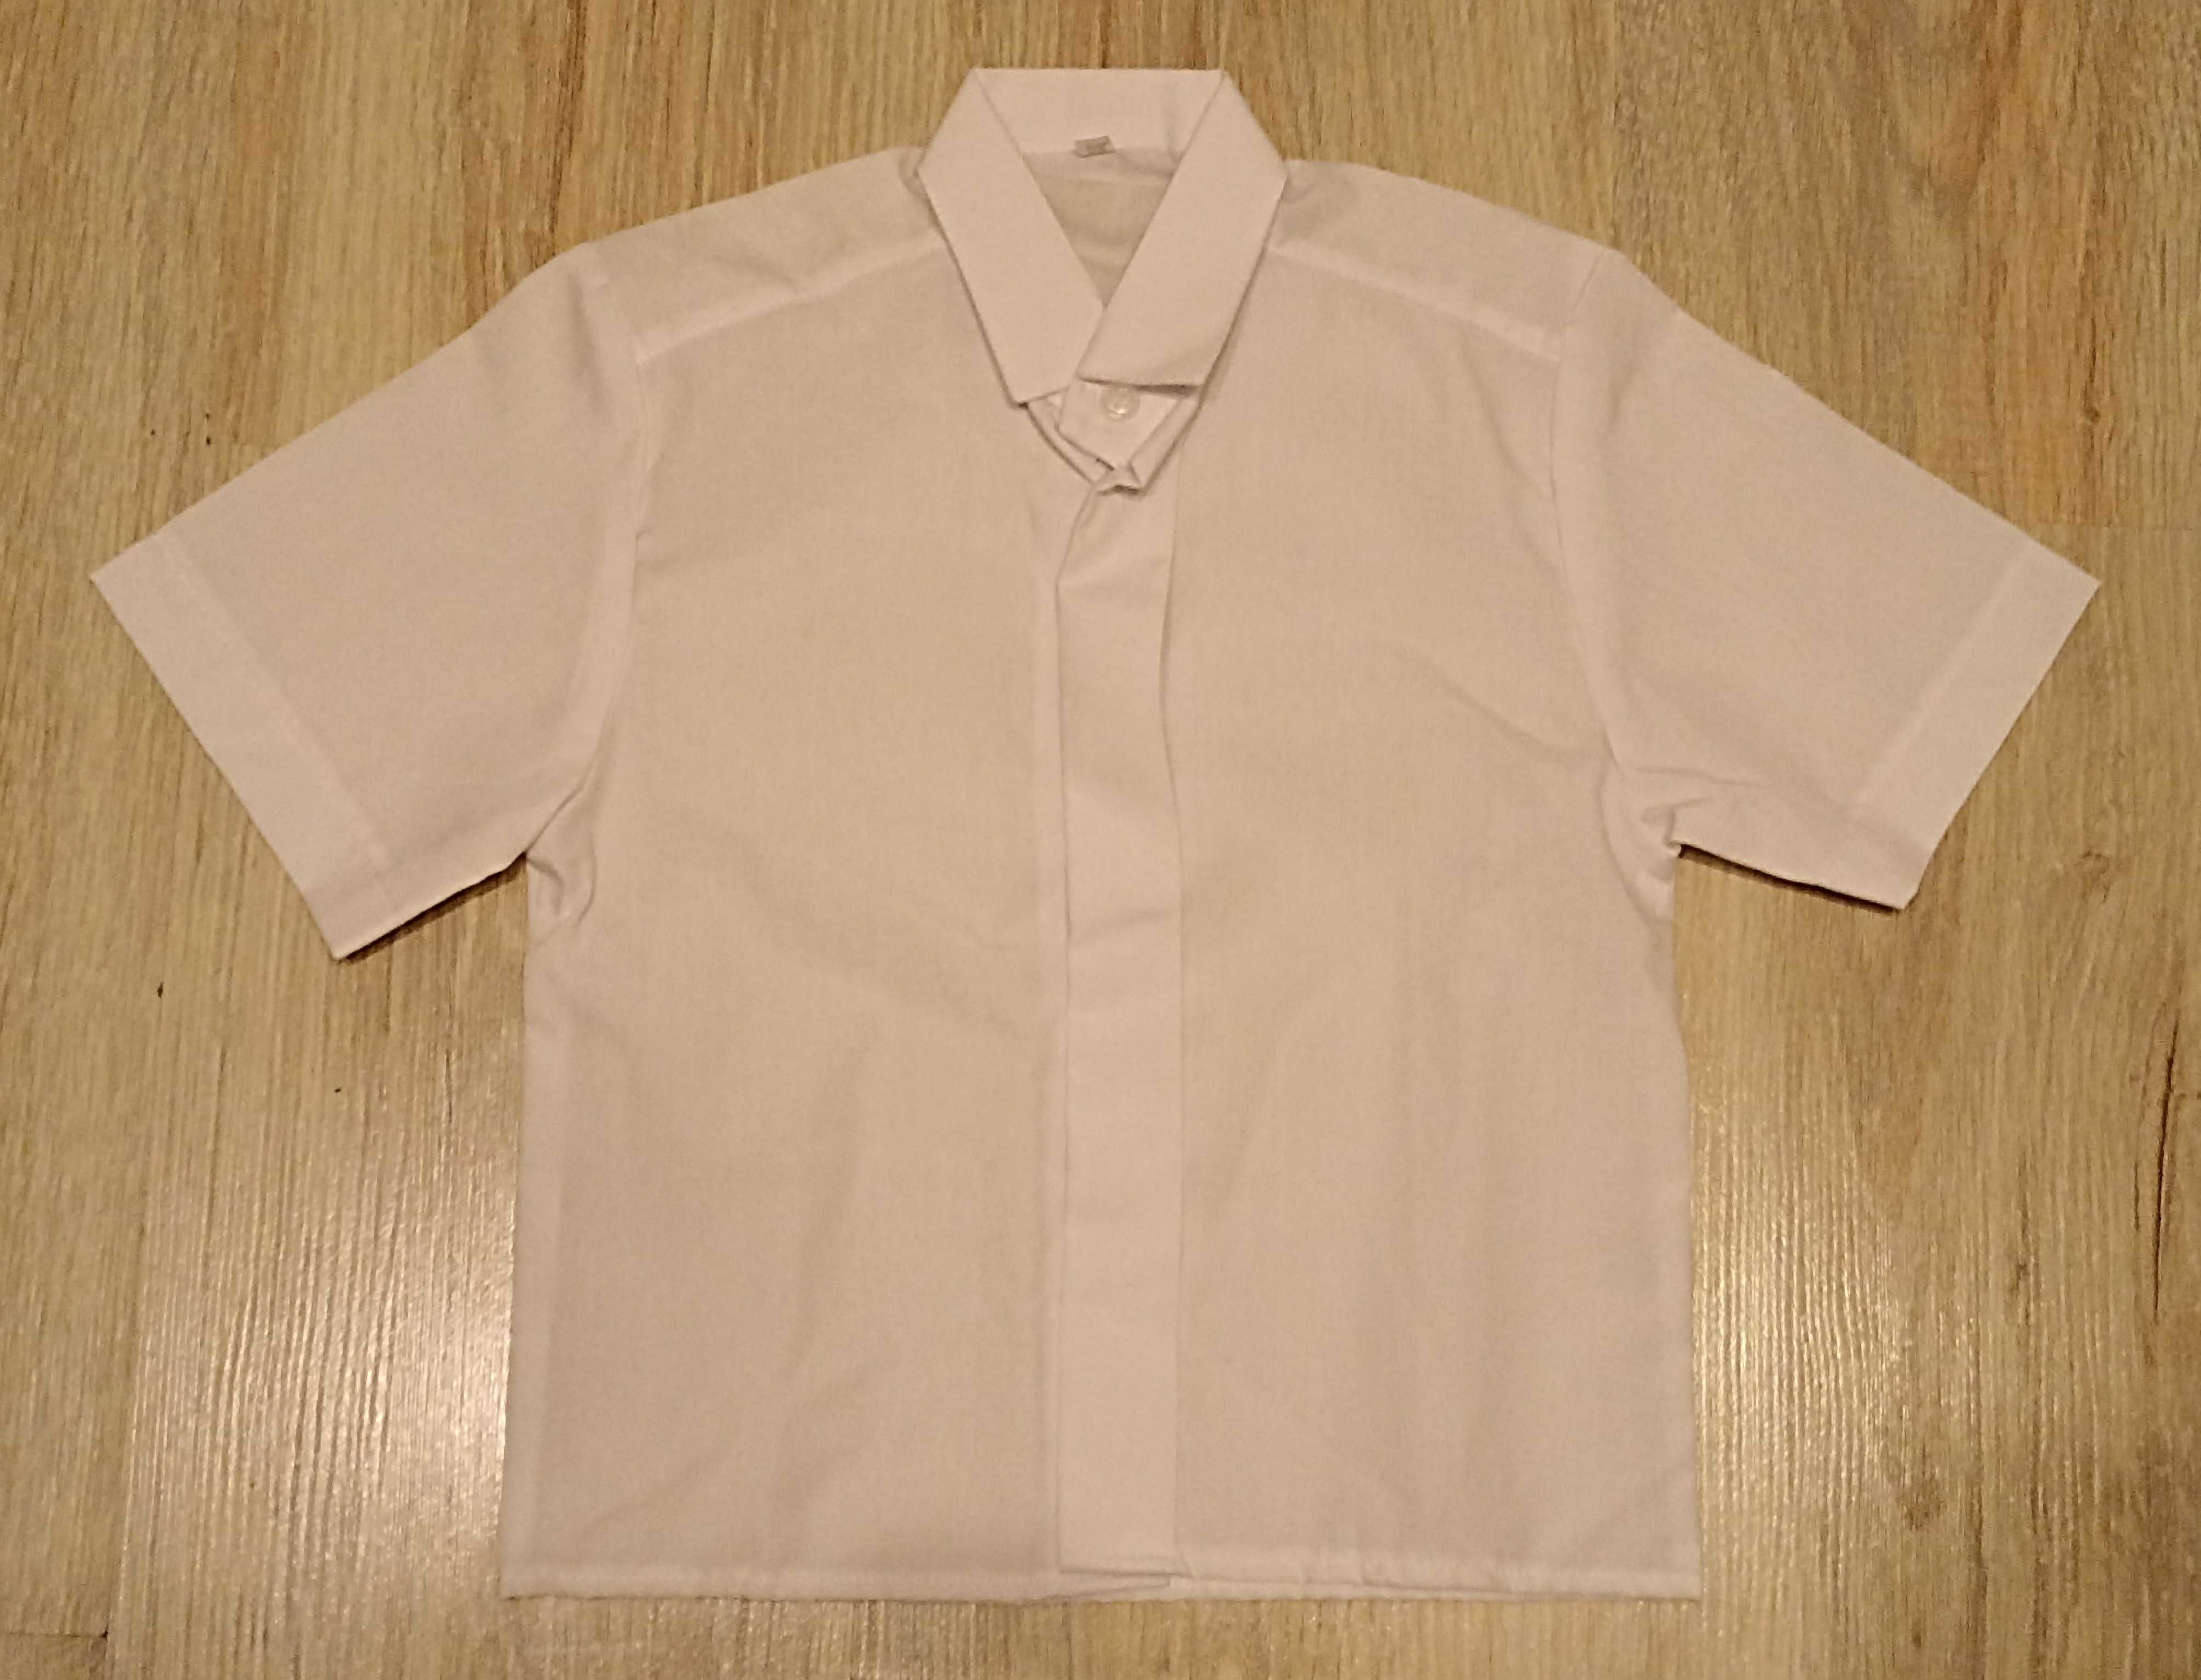 Nowa koszula biała dla chłopca - rozmiar 98